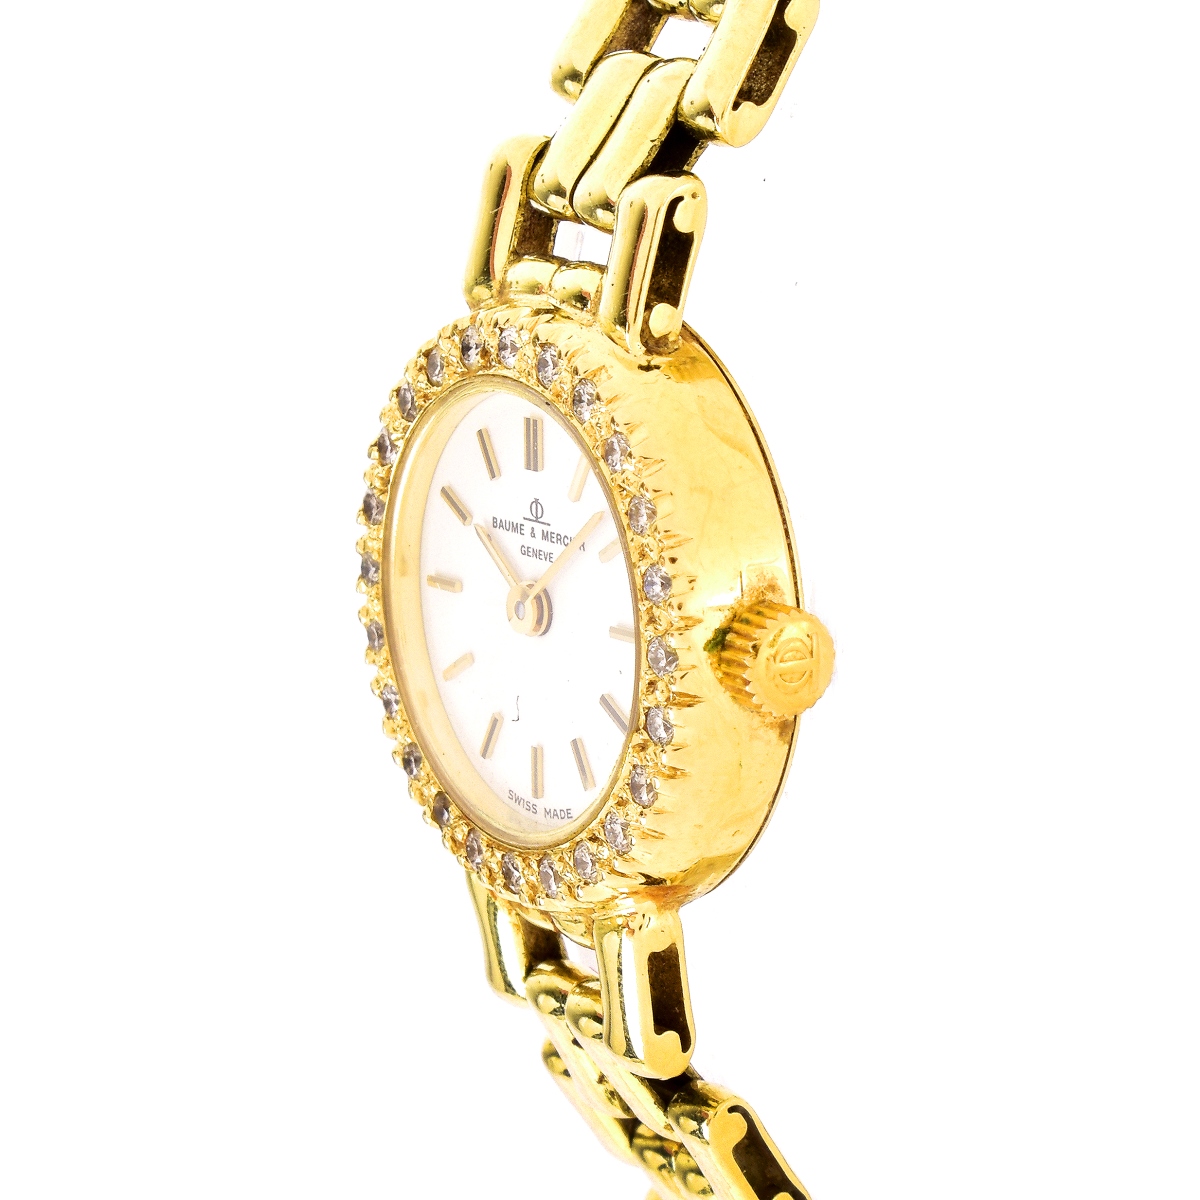 Lady's Baume & Mercier Watch